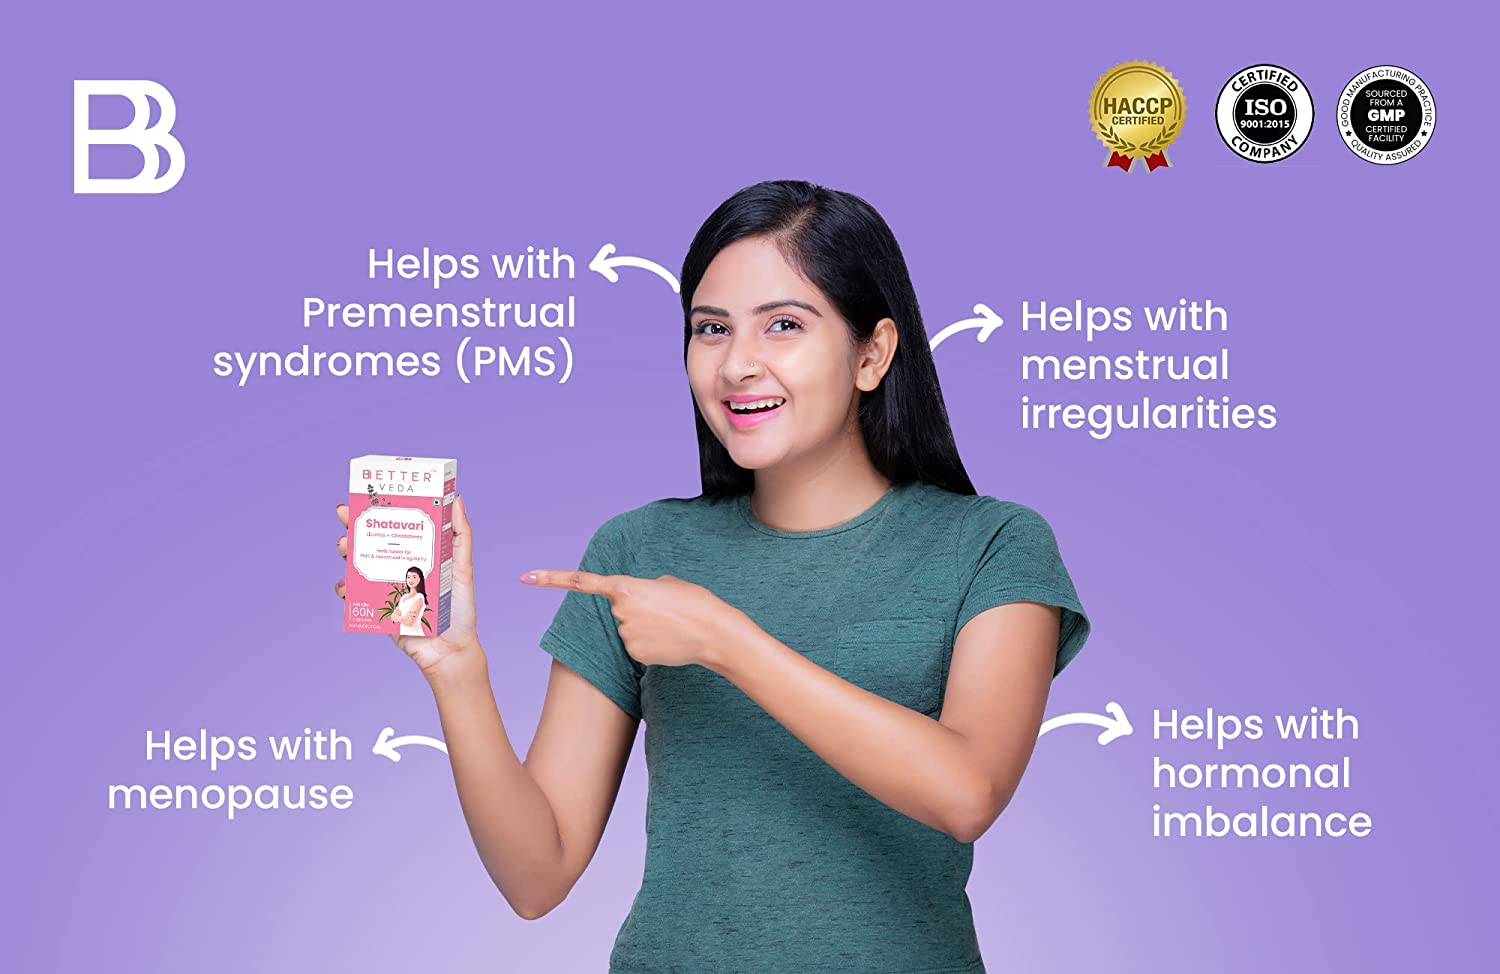 BBetter Shatavari Supplement for Women | For PCOS, PCOD, PMS I 60 Veg Capsules